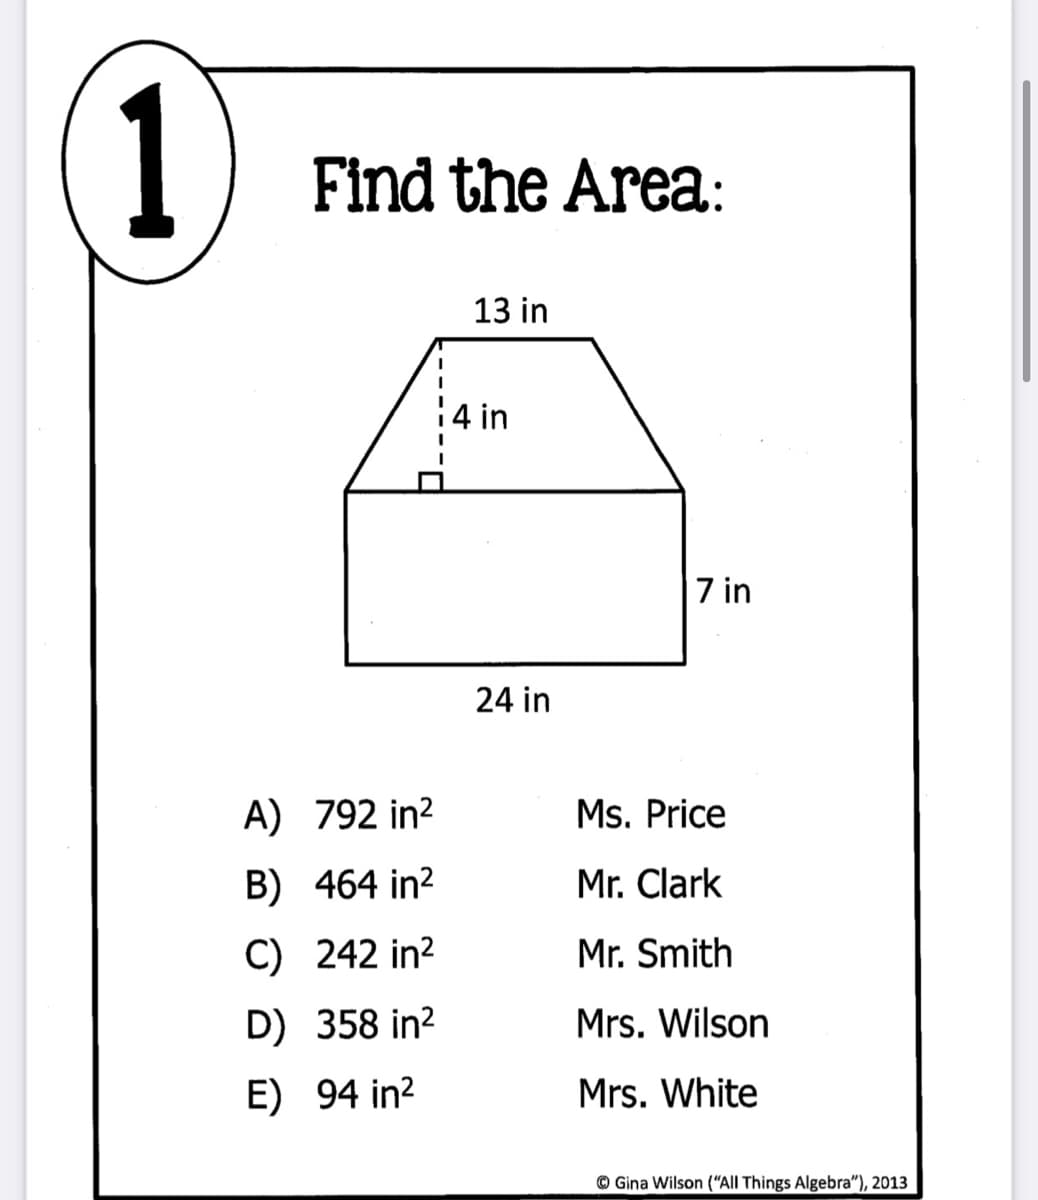 1
Find the Area:
13 in
14 in
7 in
24 in
A) 792 in?
Ms. Price
B) 464 in?
Mr. Clark
C) 242 in?
Mr. Smith
D) 358 in?
Mrs. Wilson
E) 94 in?
Mrs. White
© Gina Wilson (“All Things Algebra"), 2013
